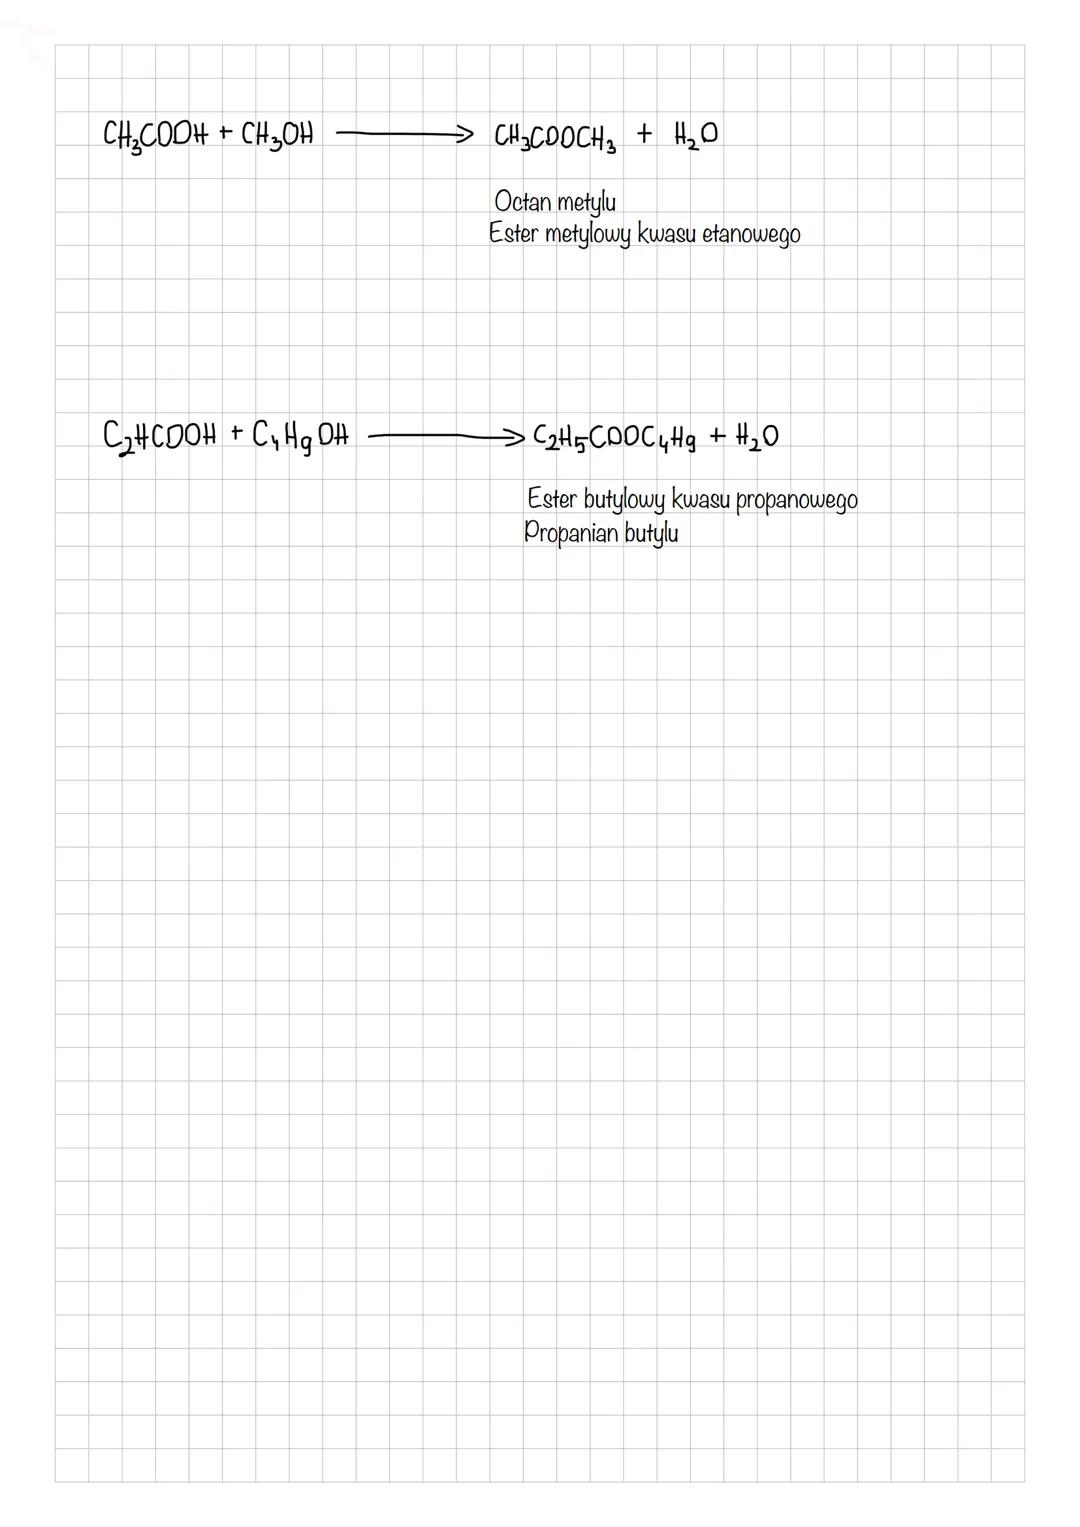 Estry sa to zwiazki zbudowane z dwoch rodnikow i niepelnej grupy karboksylowej o wzorze
R-C² ORI
R-COOR,
Estry otrzymujemy w wyniku reakcji 